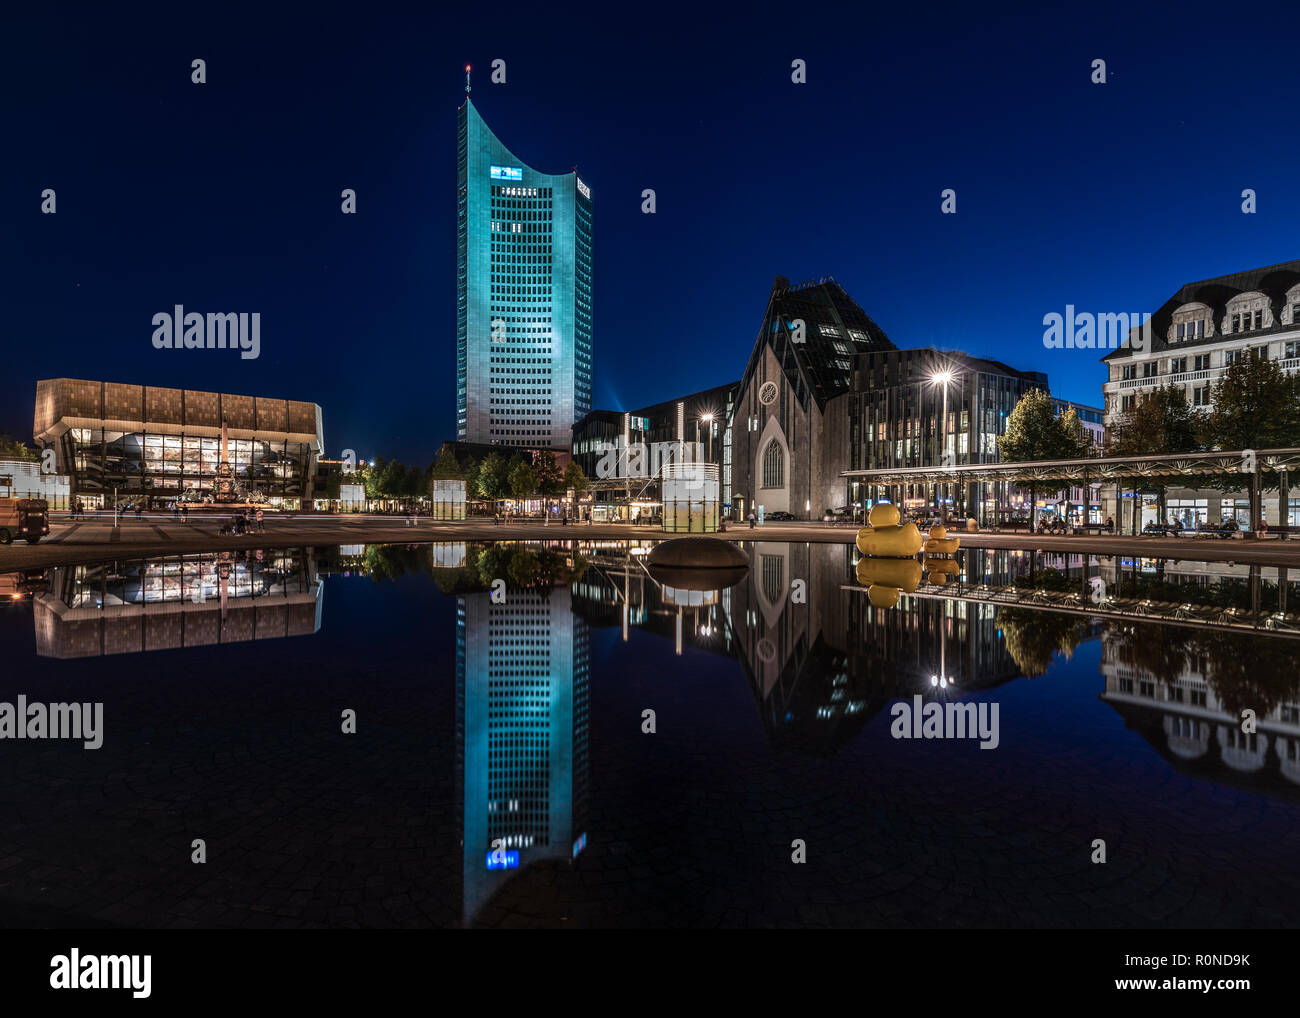 Der Augustusplatz in der Nacht, Leipzig, Deutschland | Leipzig Augustusplatz, Nachtaufnahme Stockfoto